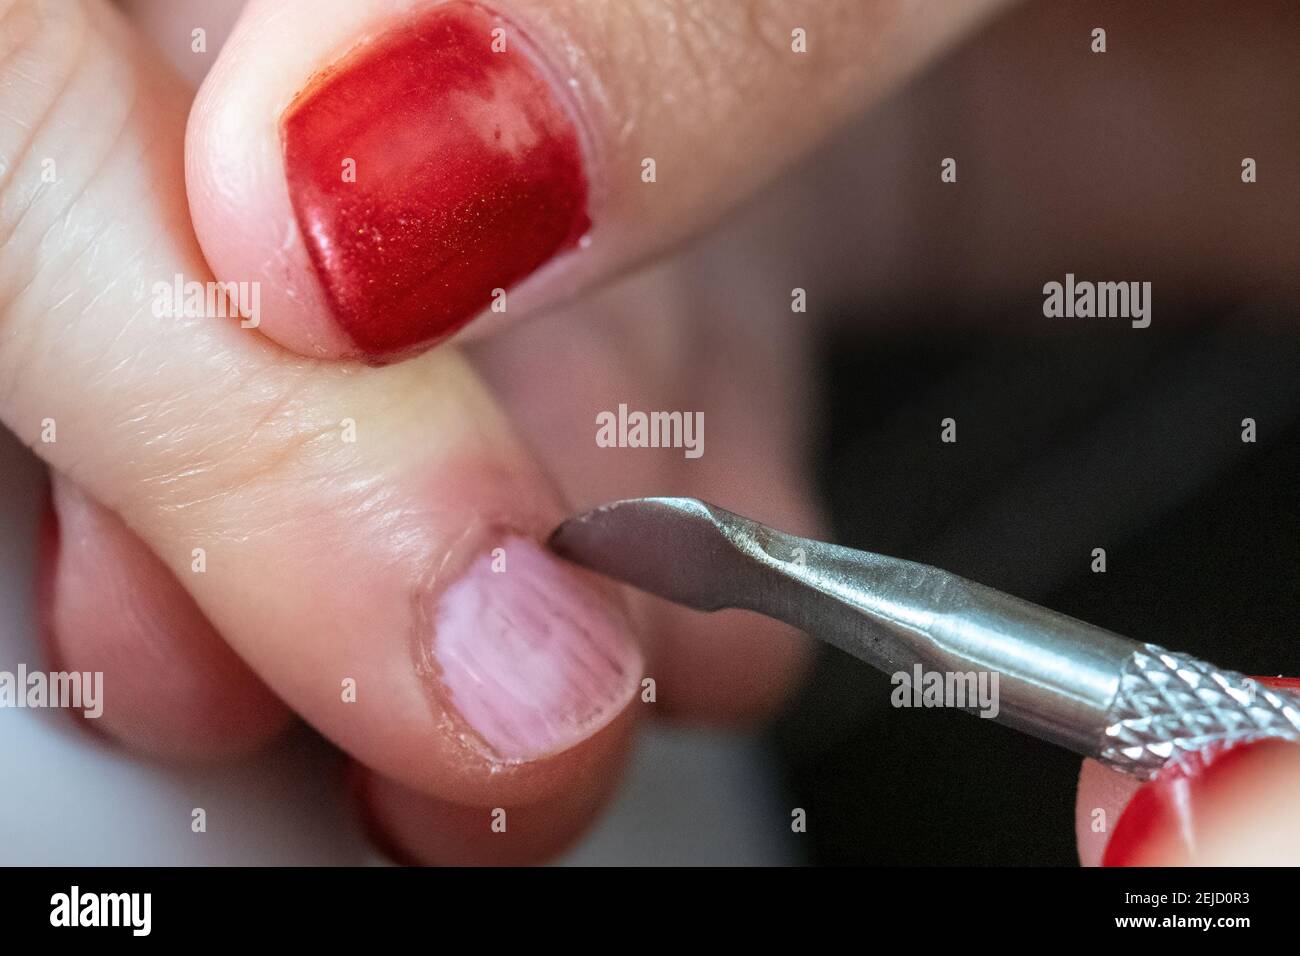 Gros plan d'un travail de vernis à ongles avec les mains des femmes Banque D'Images